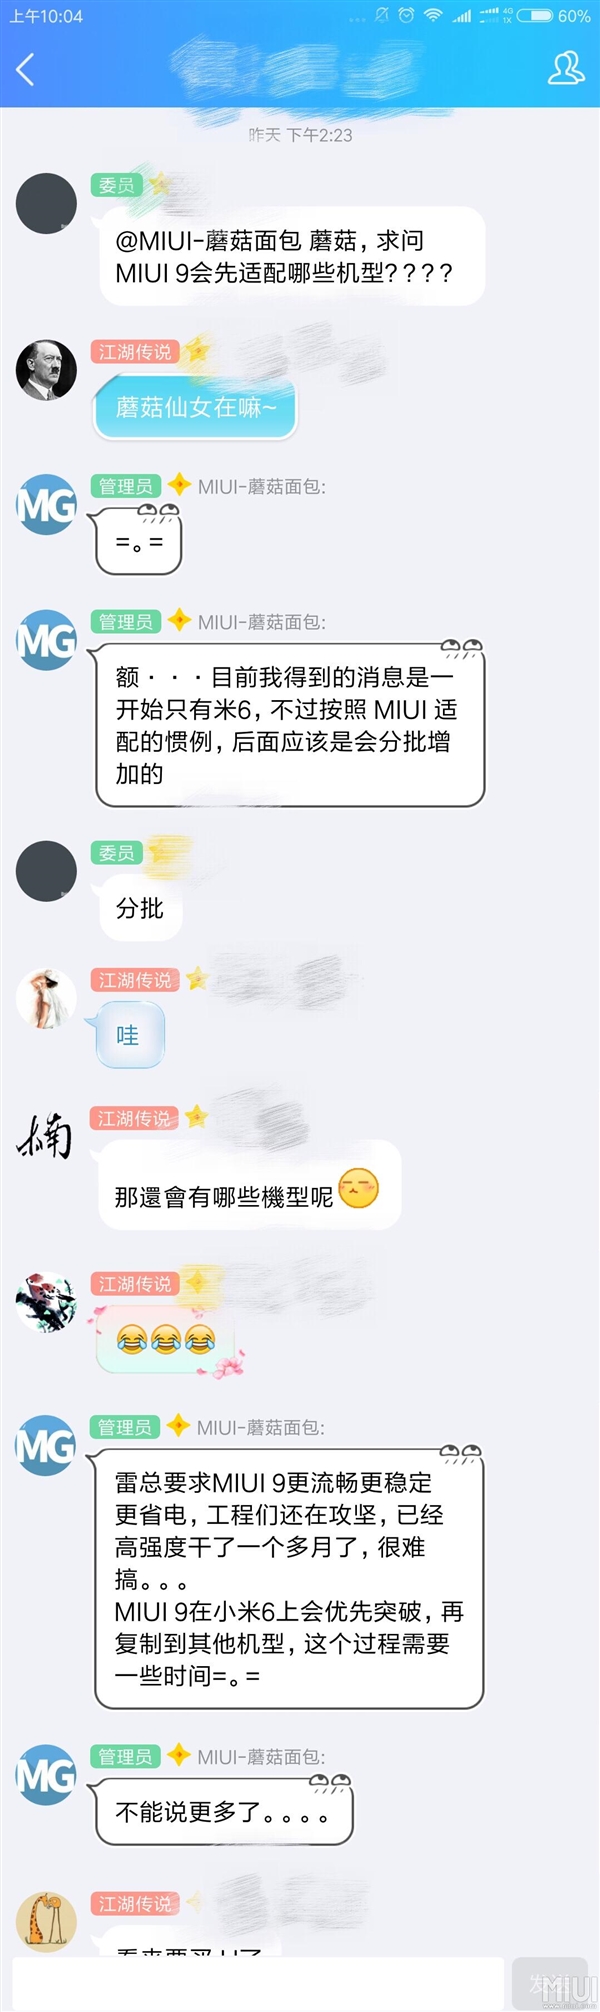 Xiaomi Mi 6 первым получит MIUI 9, — администратор форума